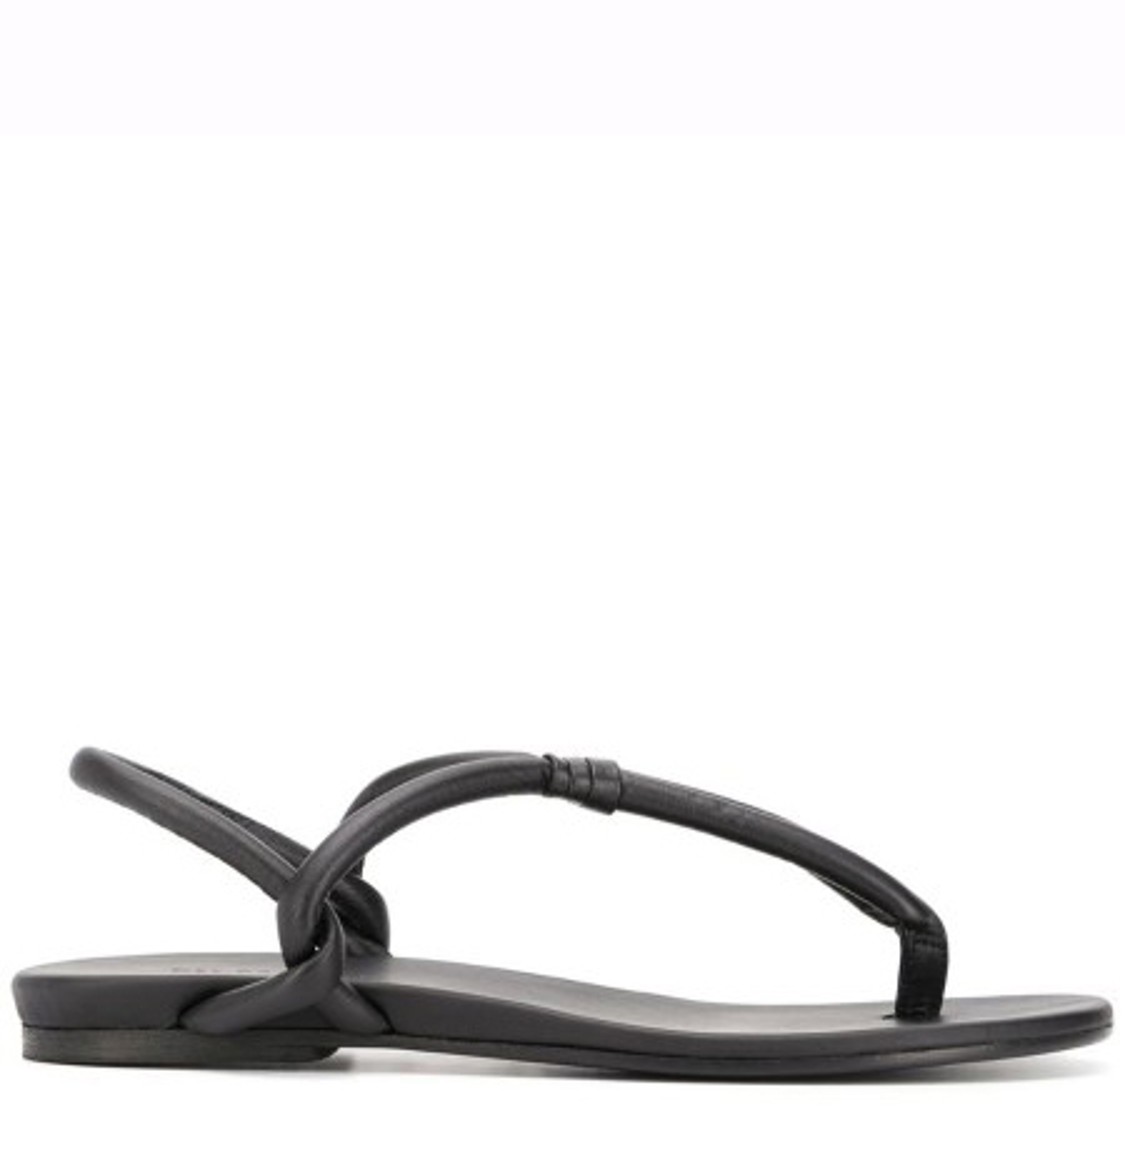 shop Del Carlo Sales Scarpe: Scarpe Del Carlo, sandalo a infradito, in pelle nera.

Composizione: 100% pelle number 1681